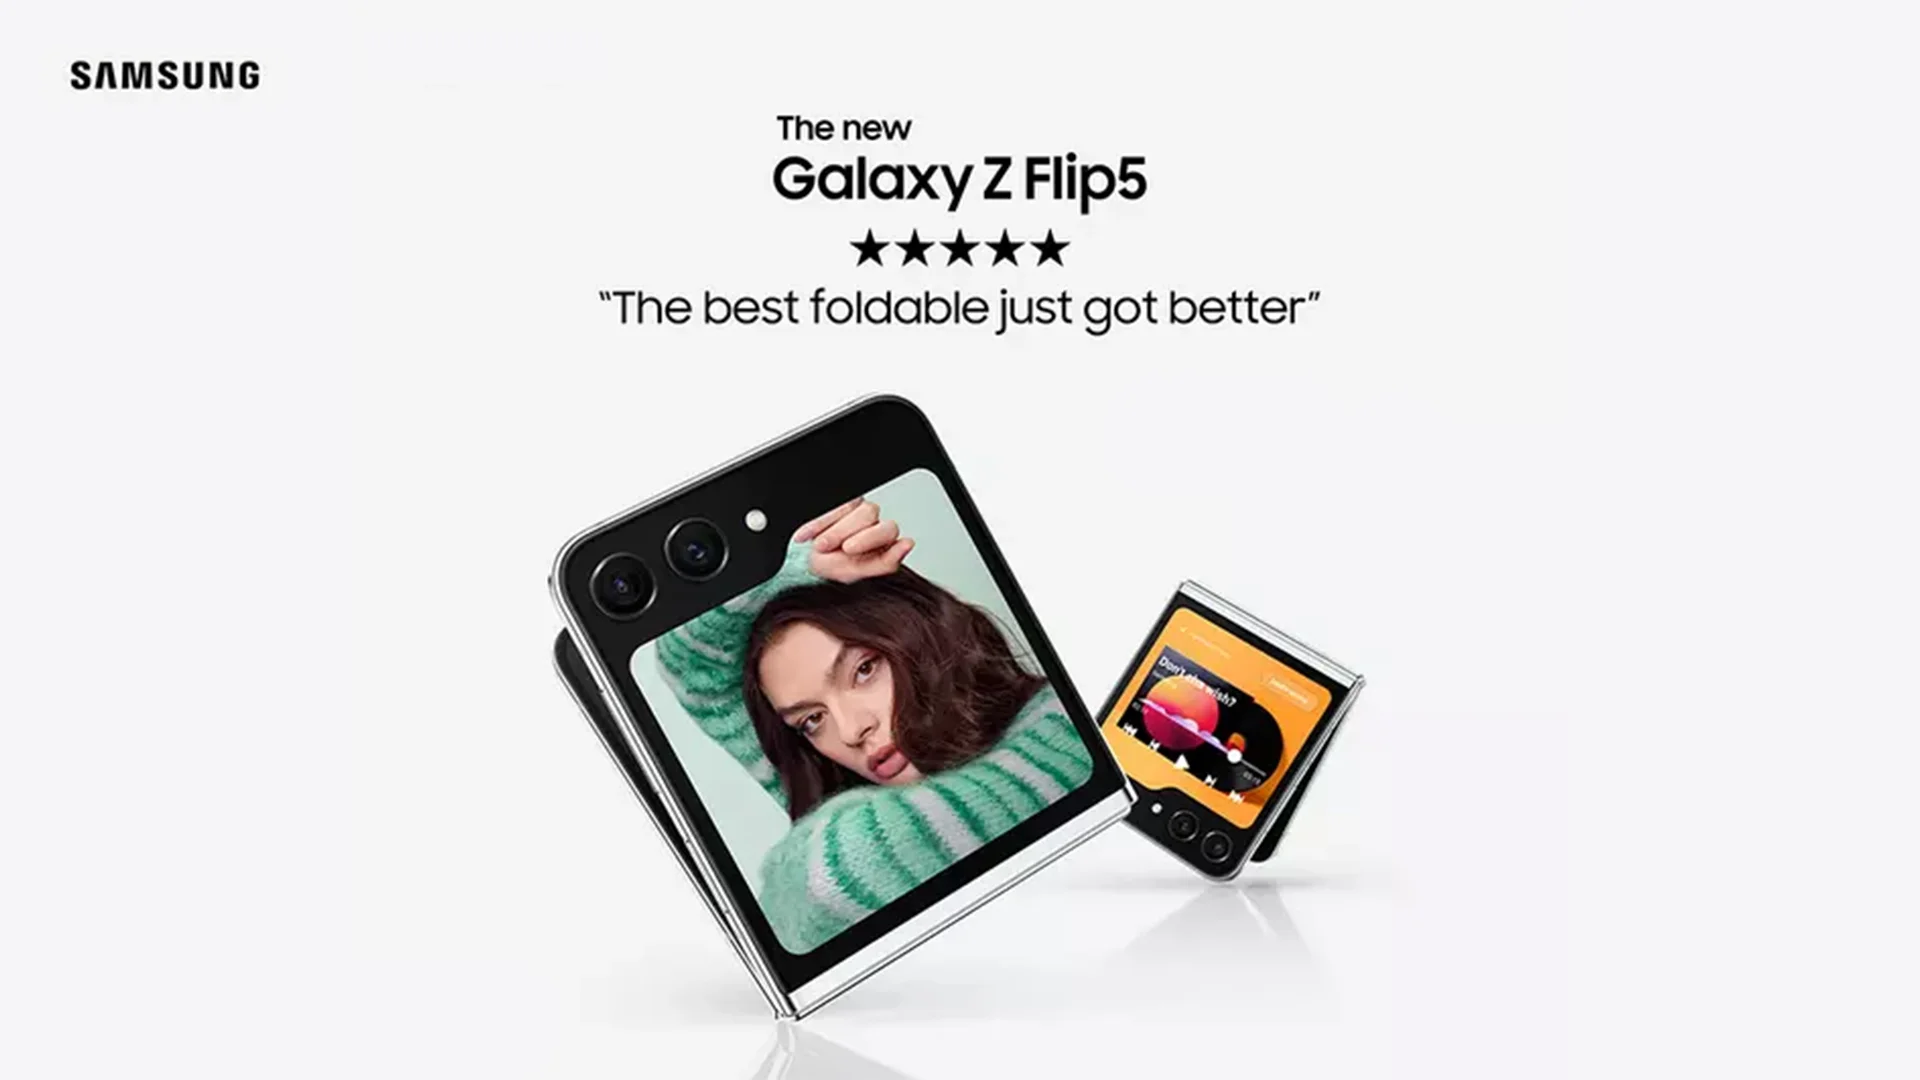 Flip, Flex, and Flourish: Samsung Galaxy Z Flip 5 In Action